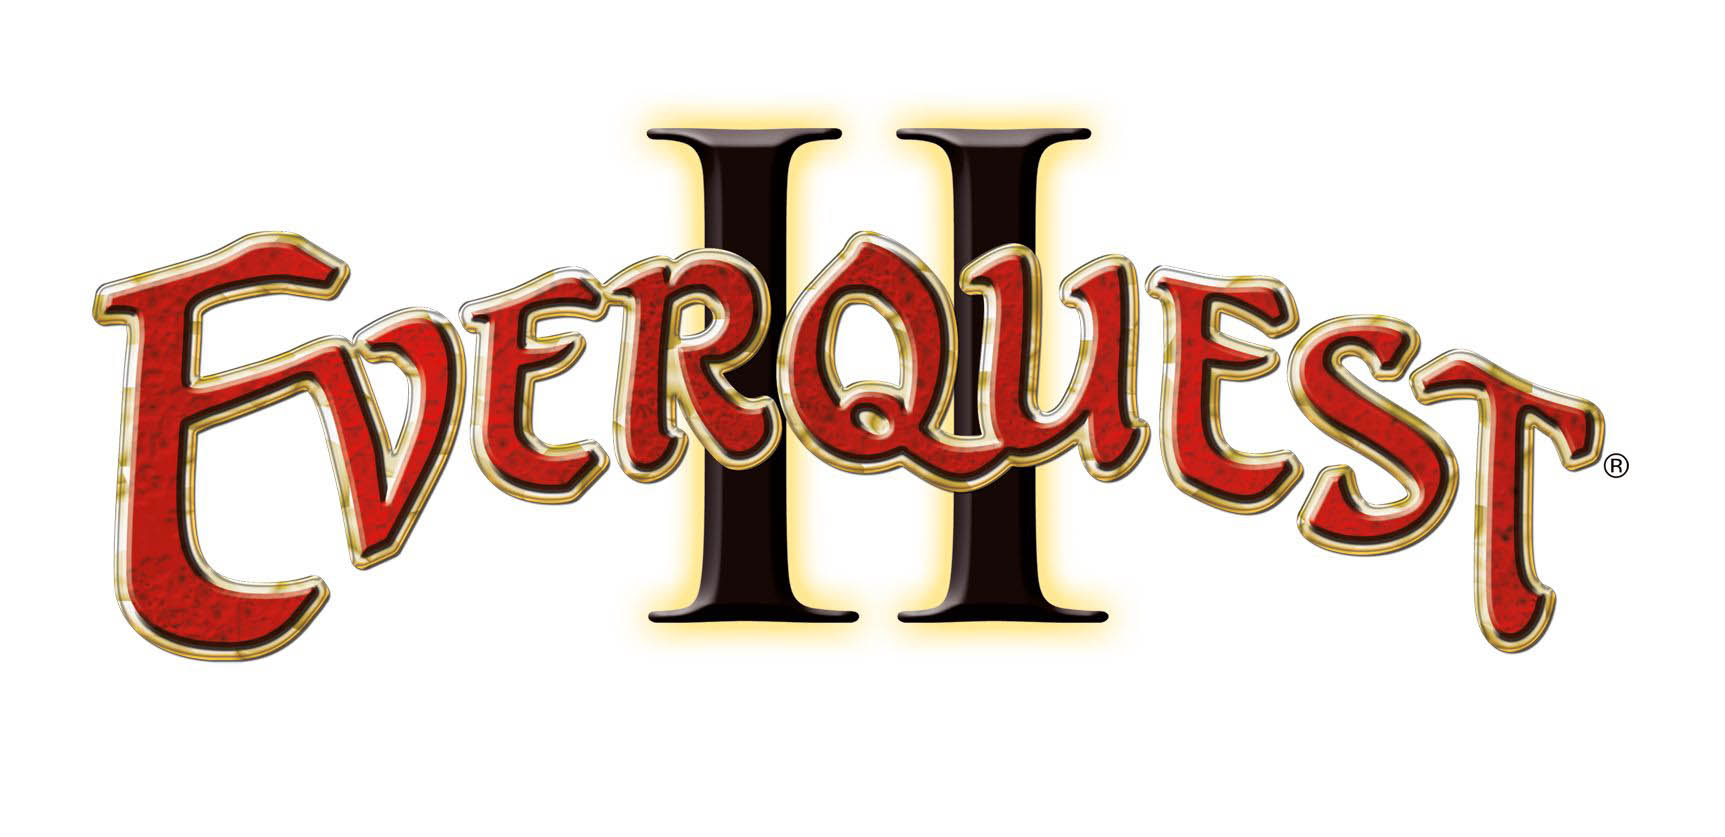 Everquest II - Logo